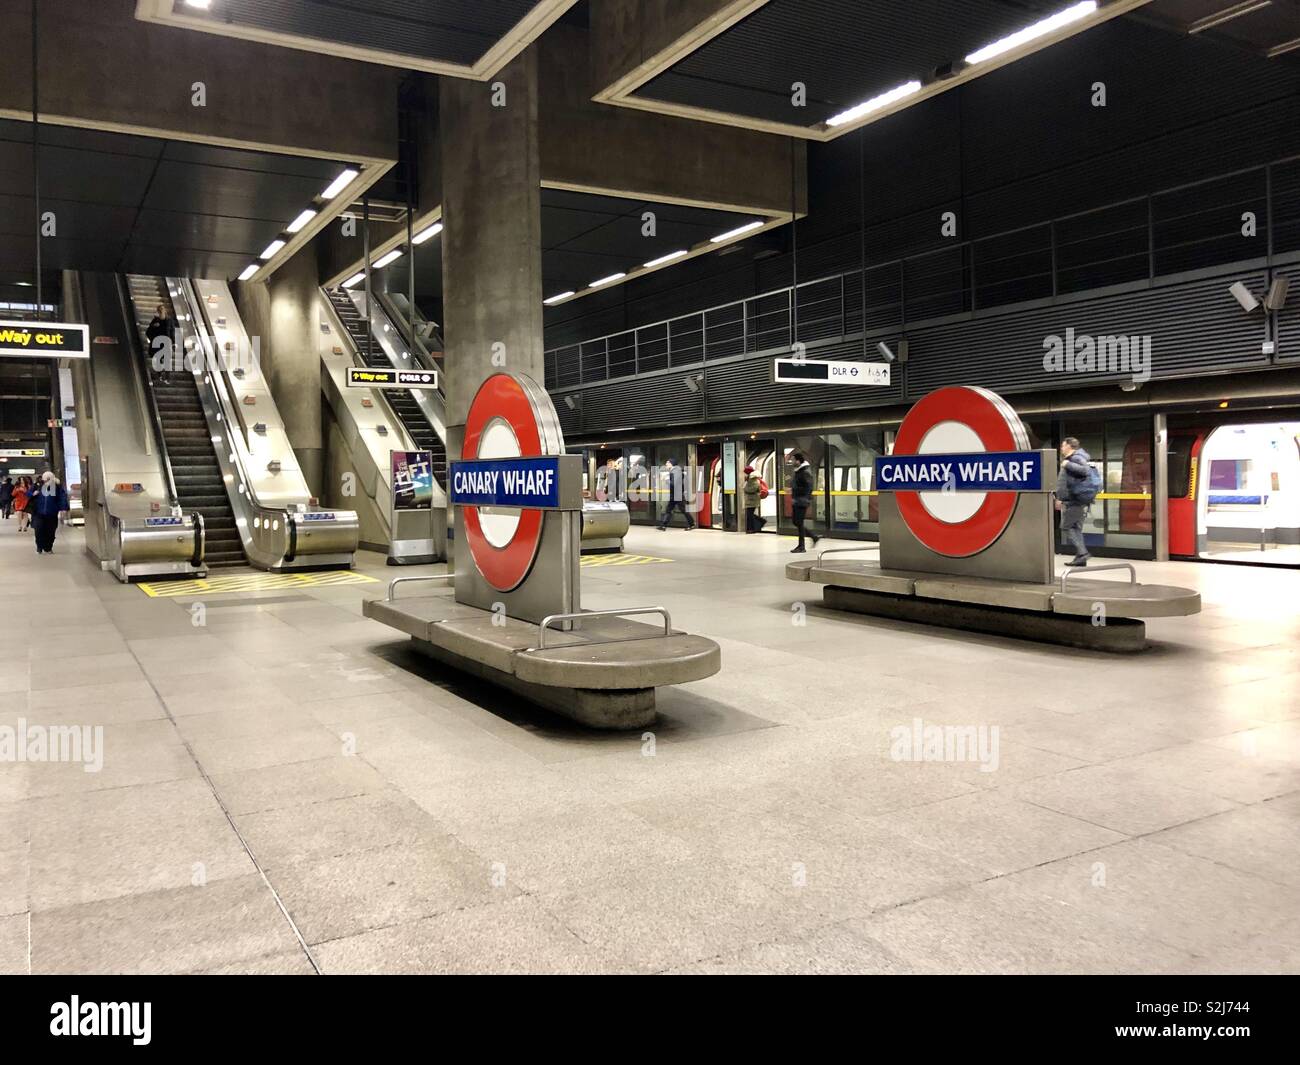 Canary Wharf tube station Stock Photo